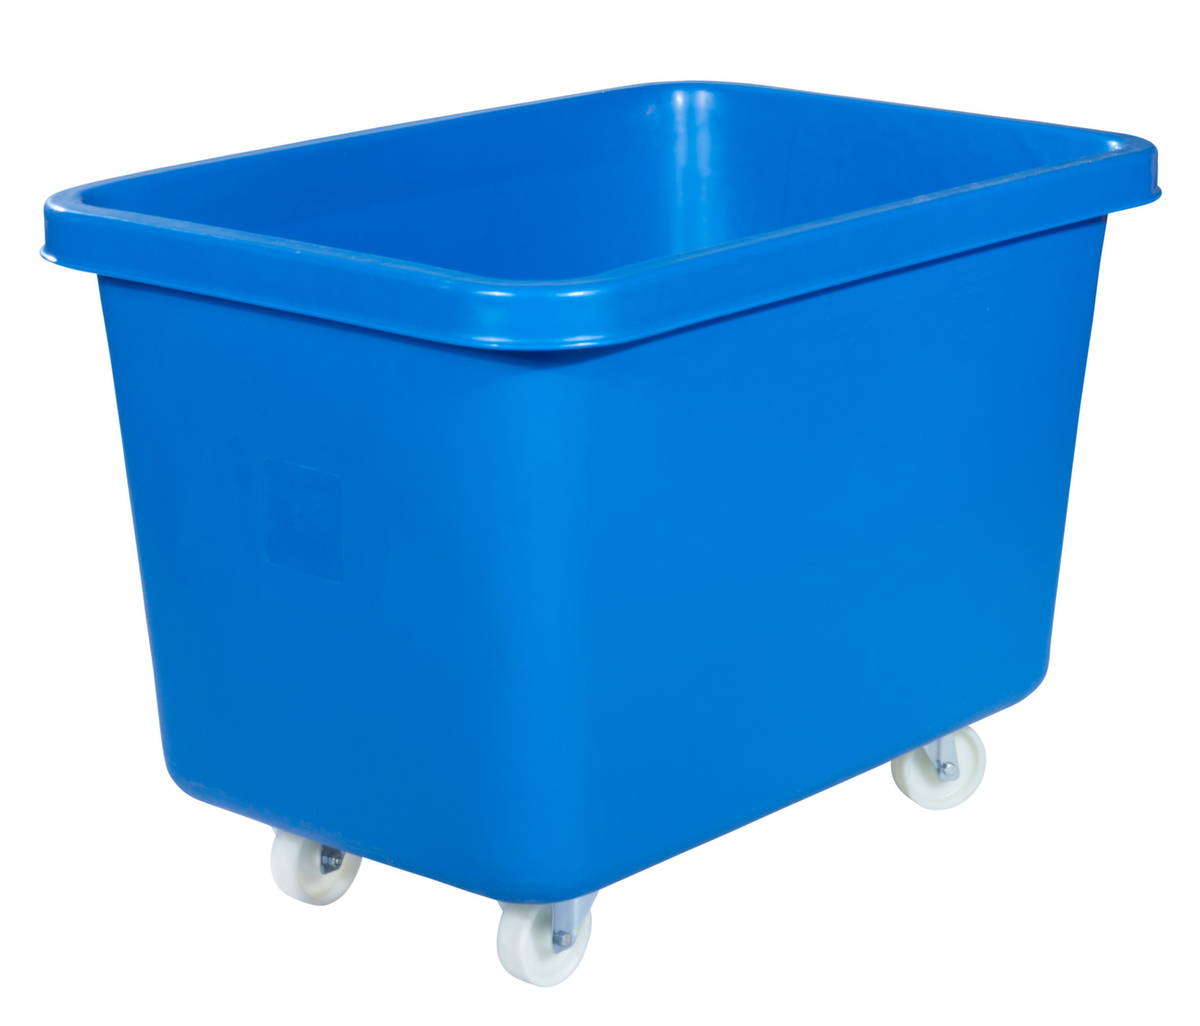 Mobiele rechthoekige container voedselveilig + versterkte basis, inhoud 227 l, blauw  ZOOM